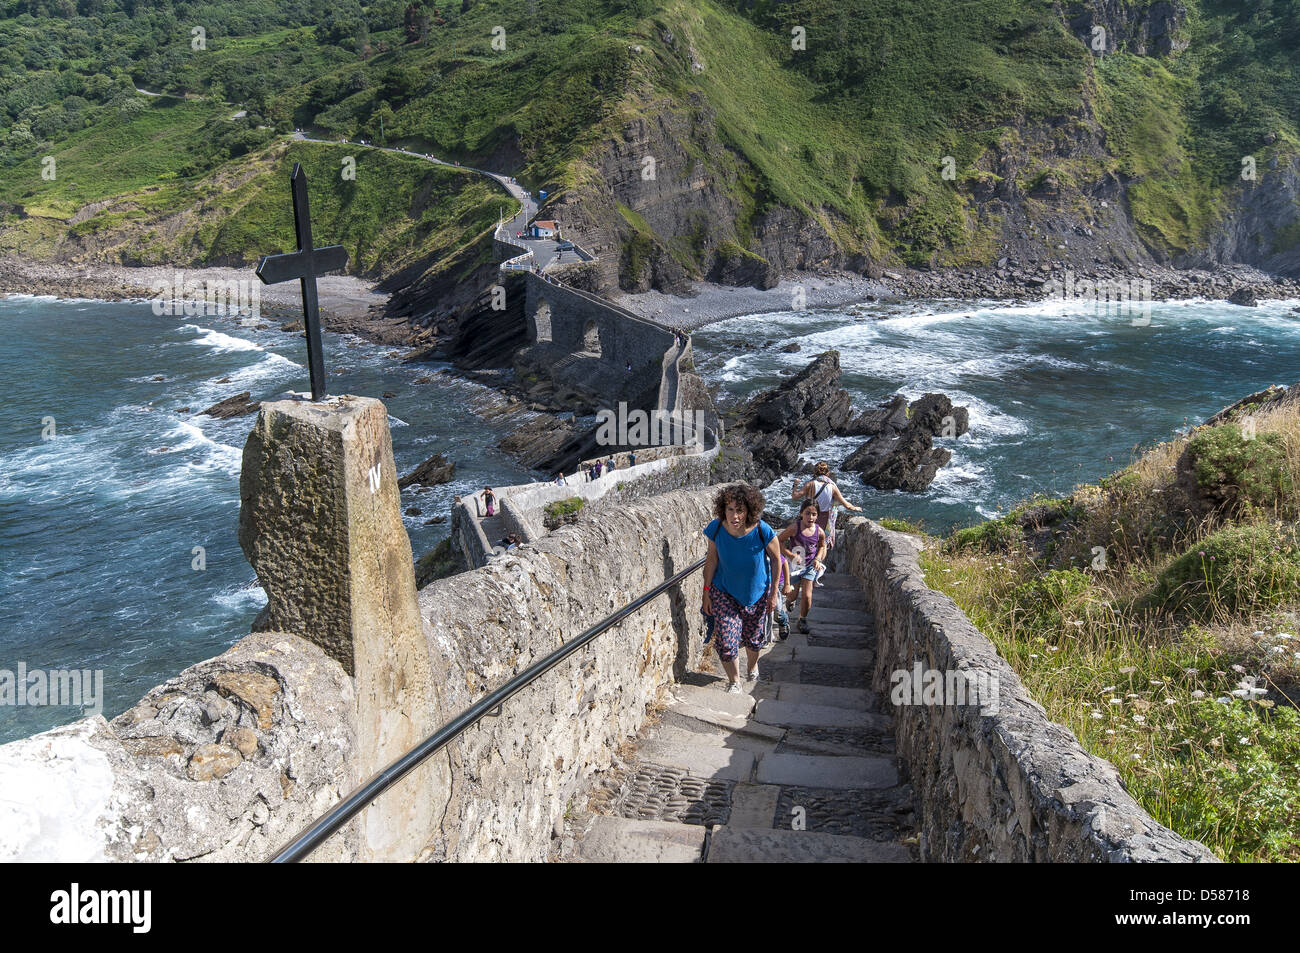 Sentier en escalier et le rocher de l'île de Gaztelugatxe sur la côte de Biscaye au Pays Basque, Espagne Banque D'Images